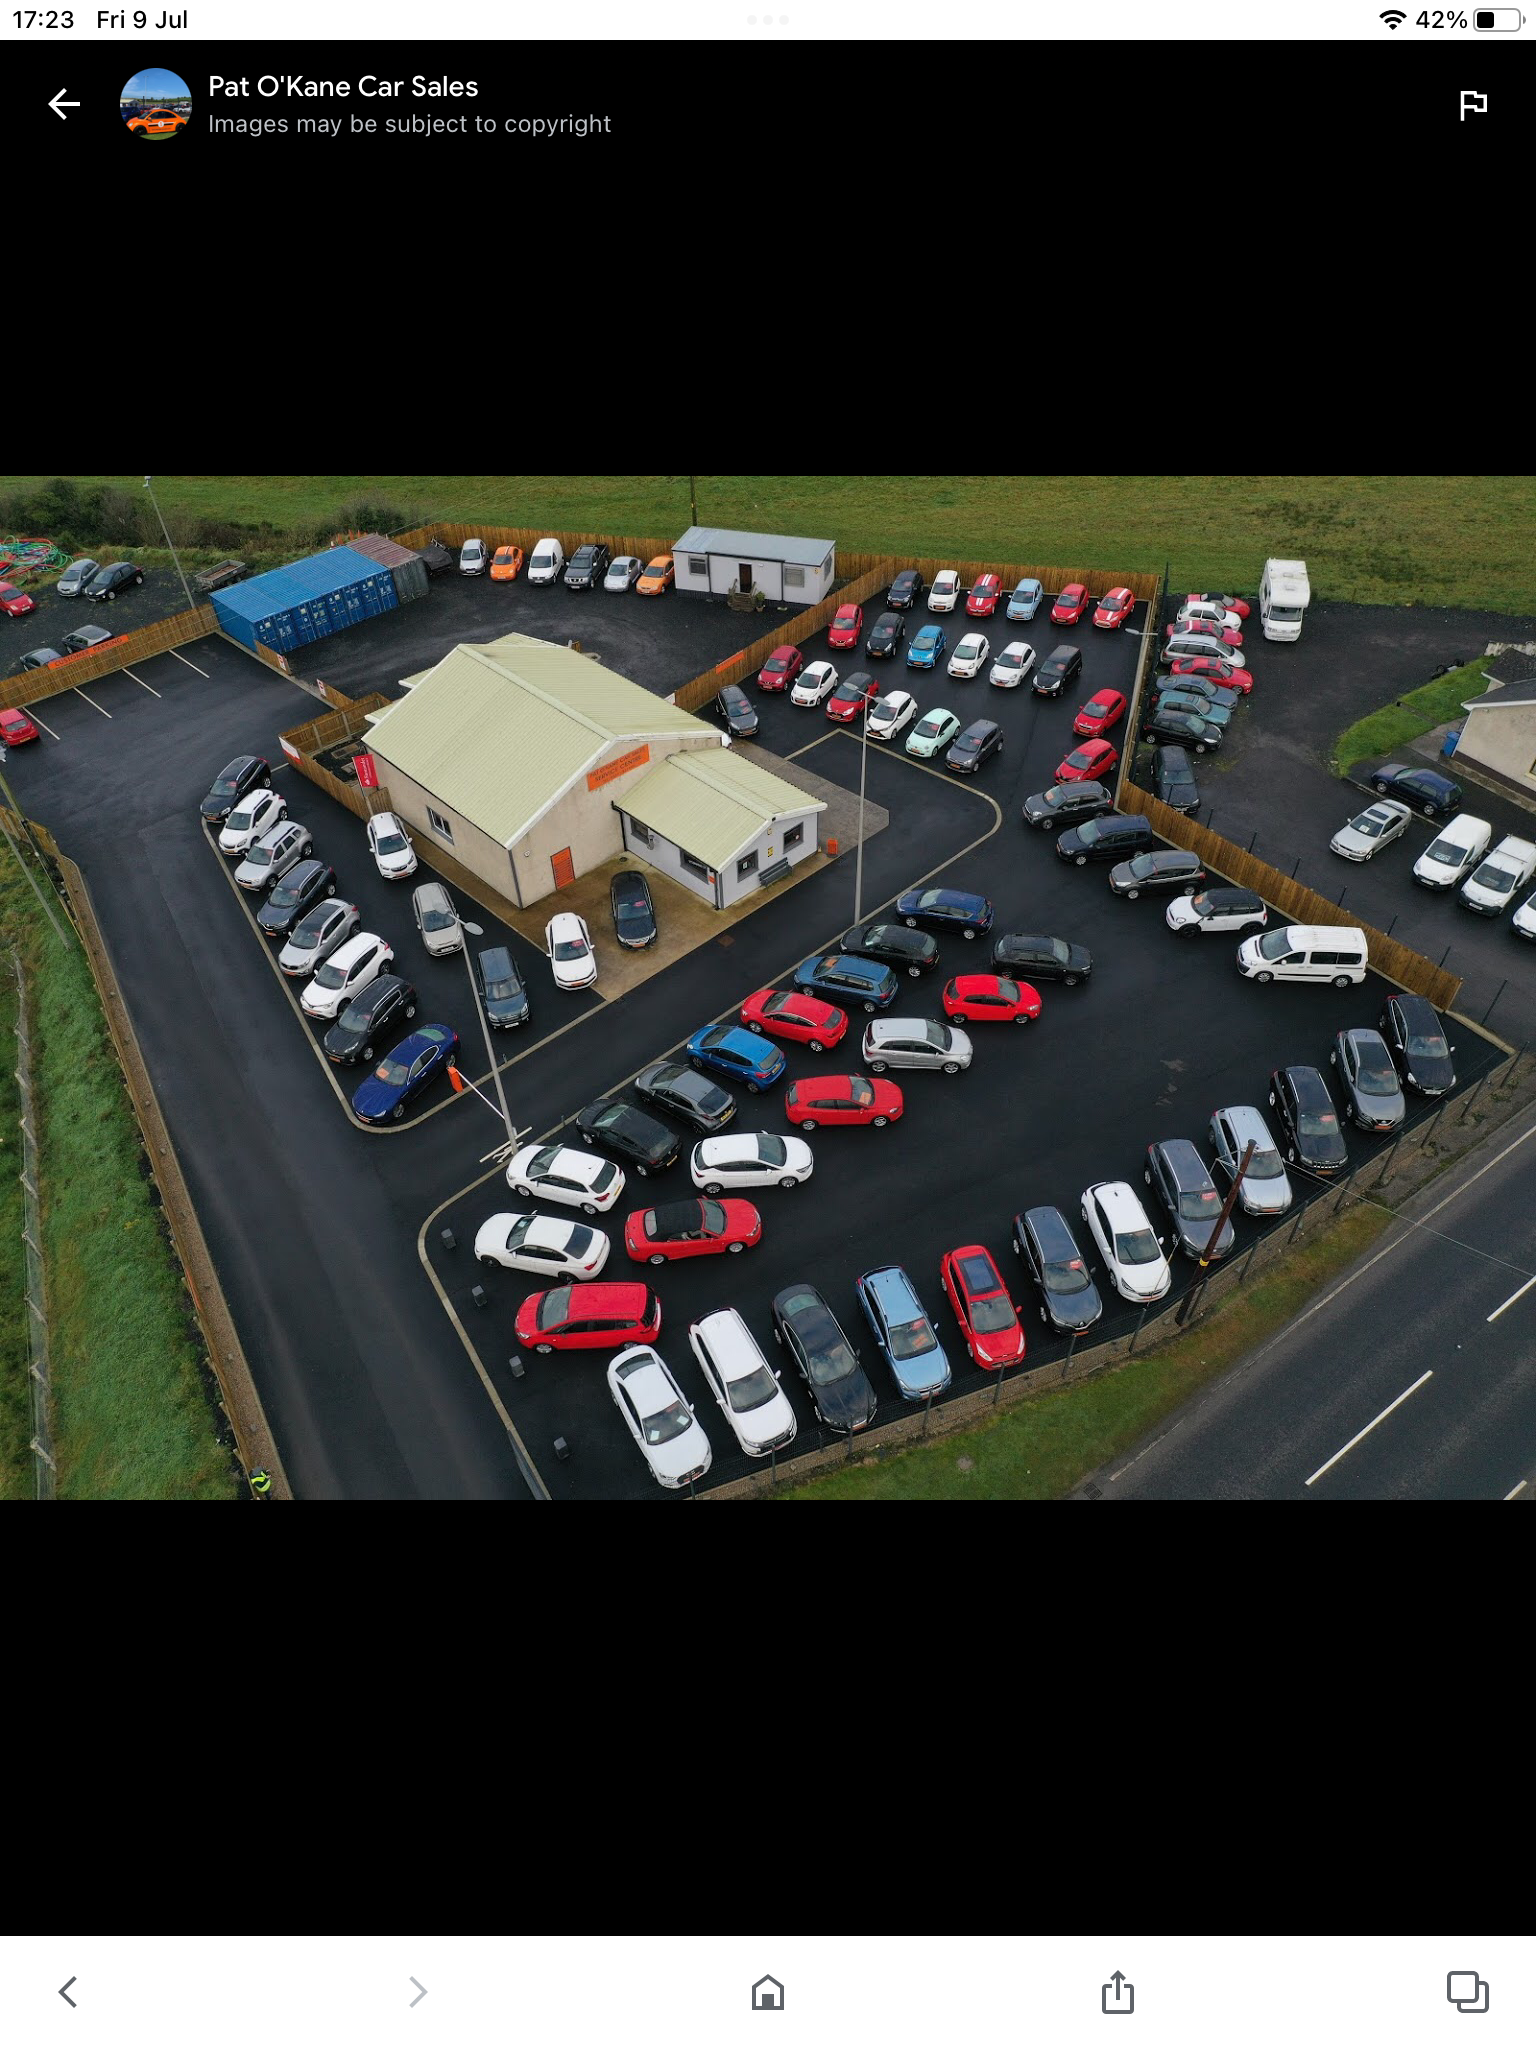 Ford EcoSport DIESEL HATCHBACK in Derry / Londonderry